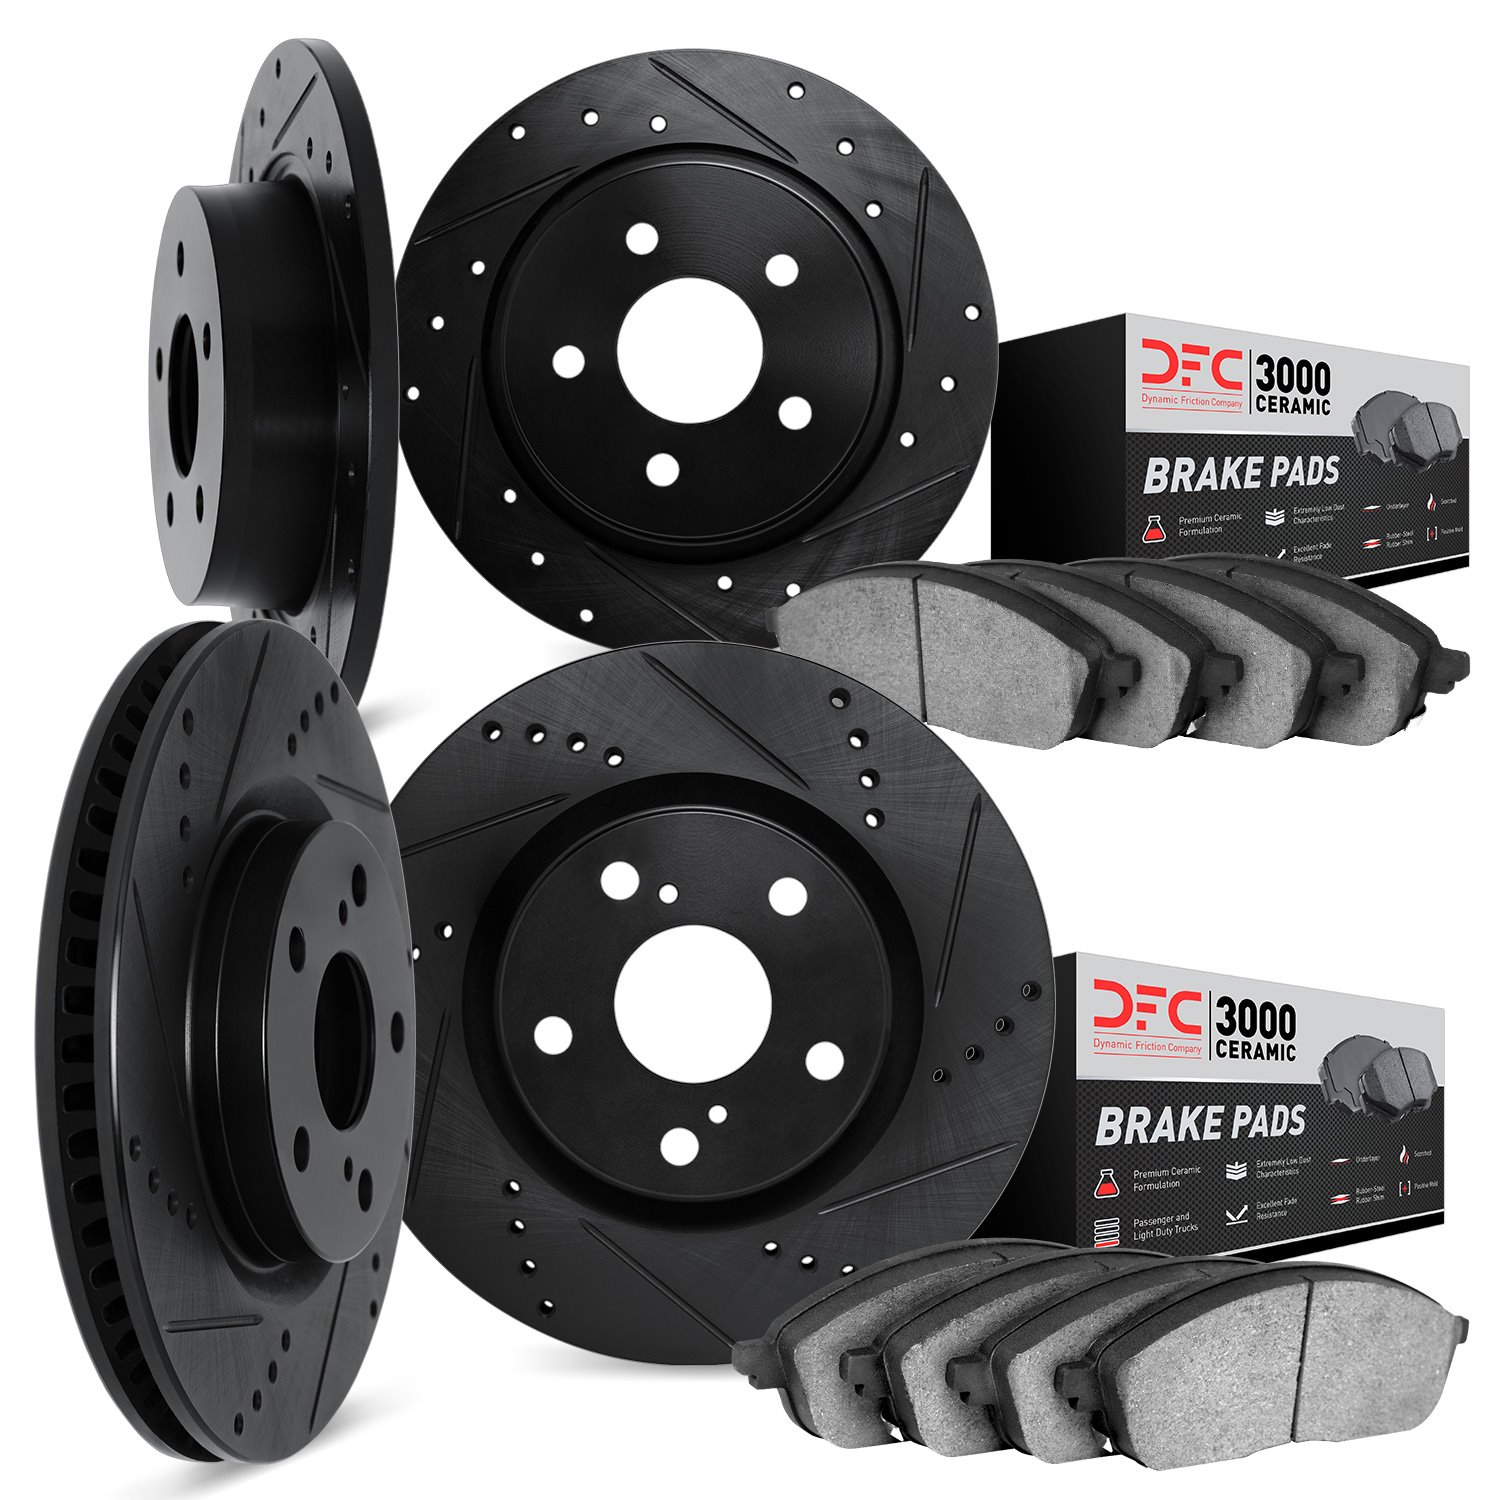 8304-03080 Drilled/Slotted Brake Rotors with 3000-Series Ceramic Brake Pads Kit [Black], Fits Select Kia/Hyundai/Genesis, Positi